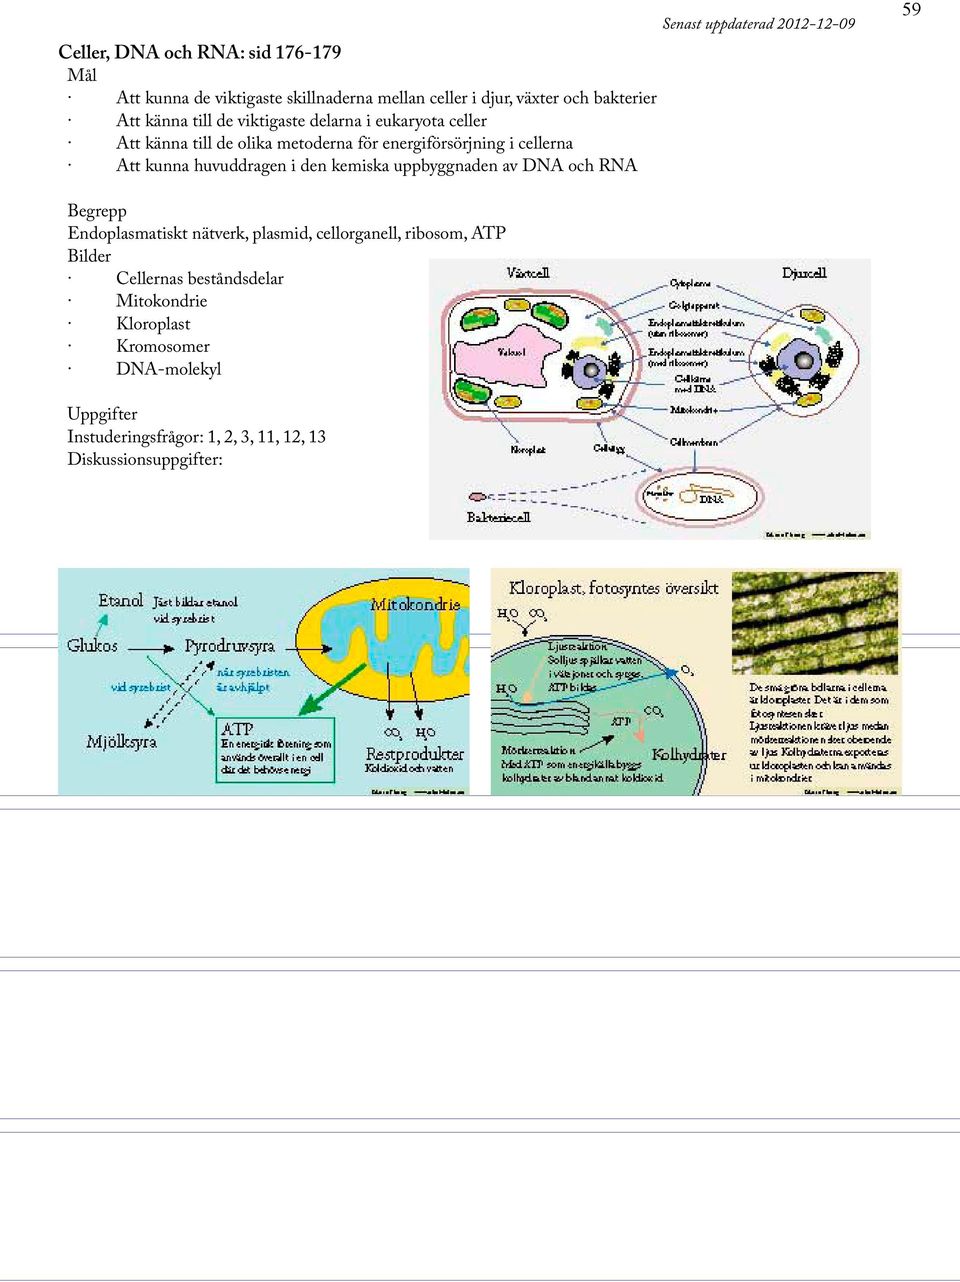 den kemiska uppbyggnaden av DNA och RNA Senast uppdaterad 2012-12-09 59 Endoplasmatiskt nätverk, plasmid, cellorganell, ribosom,